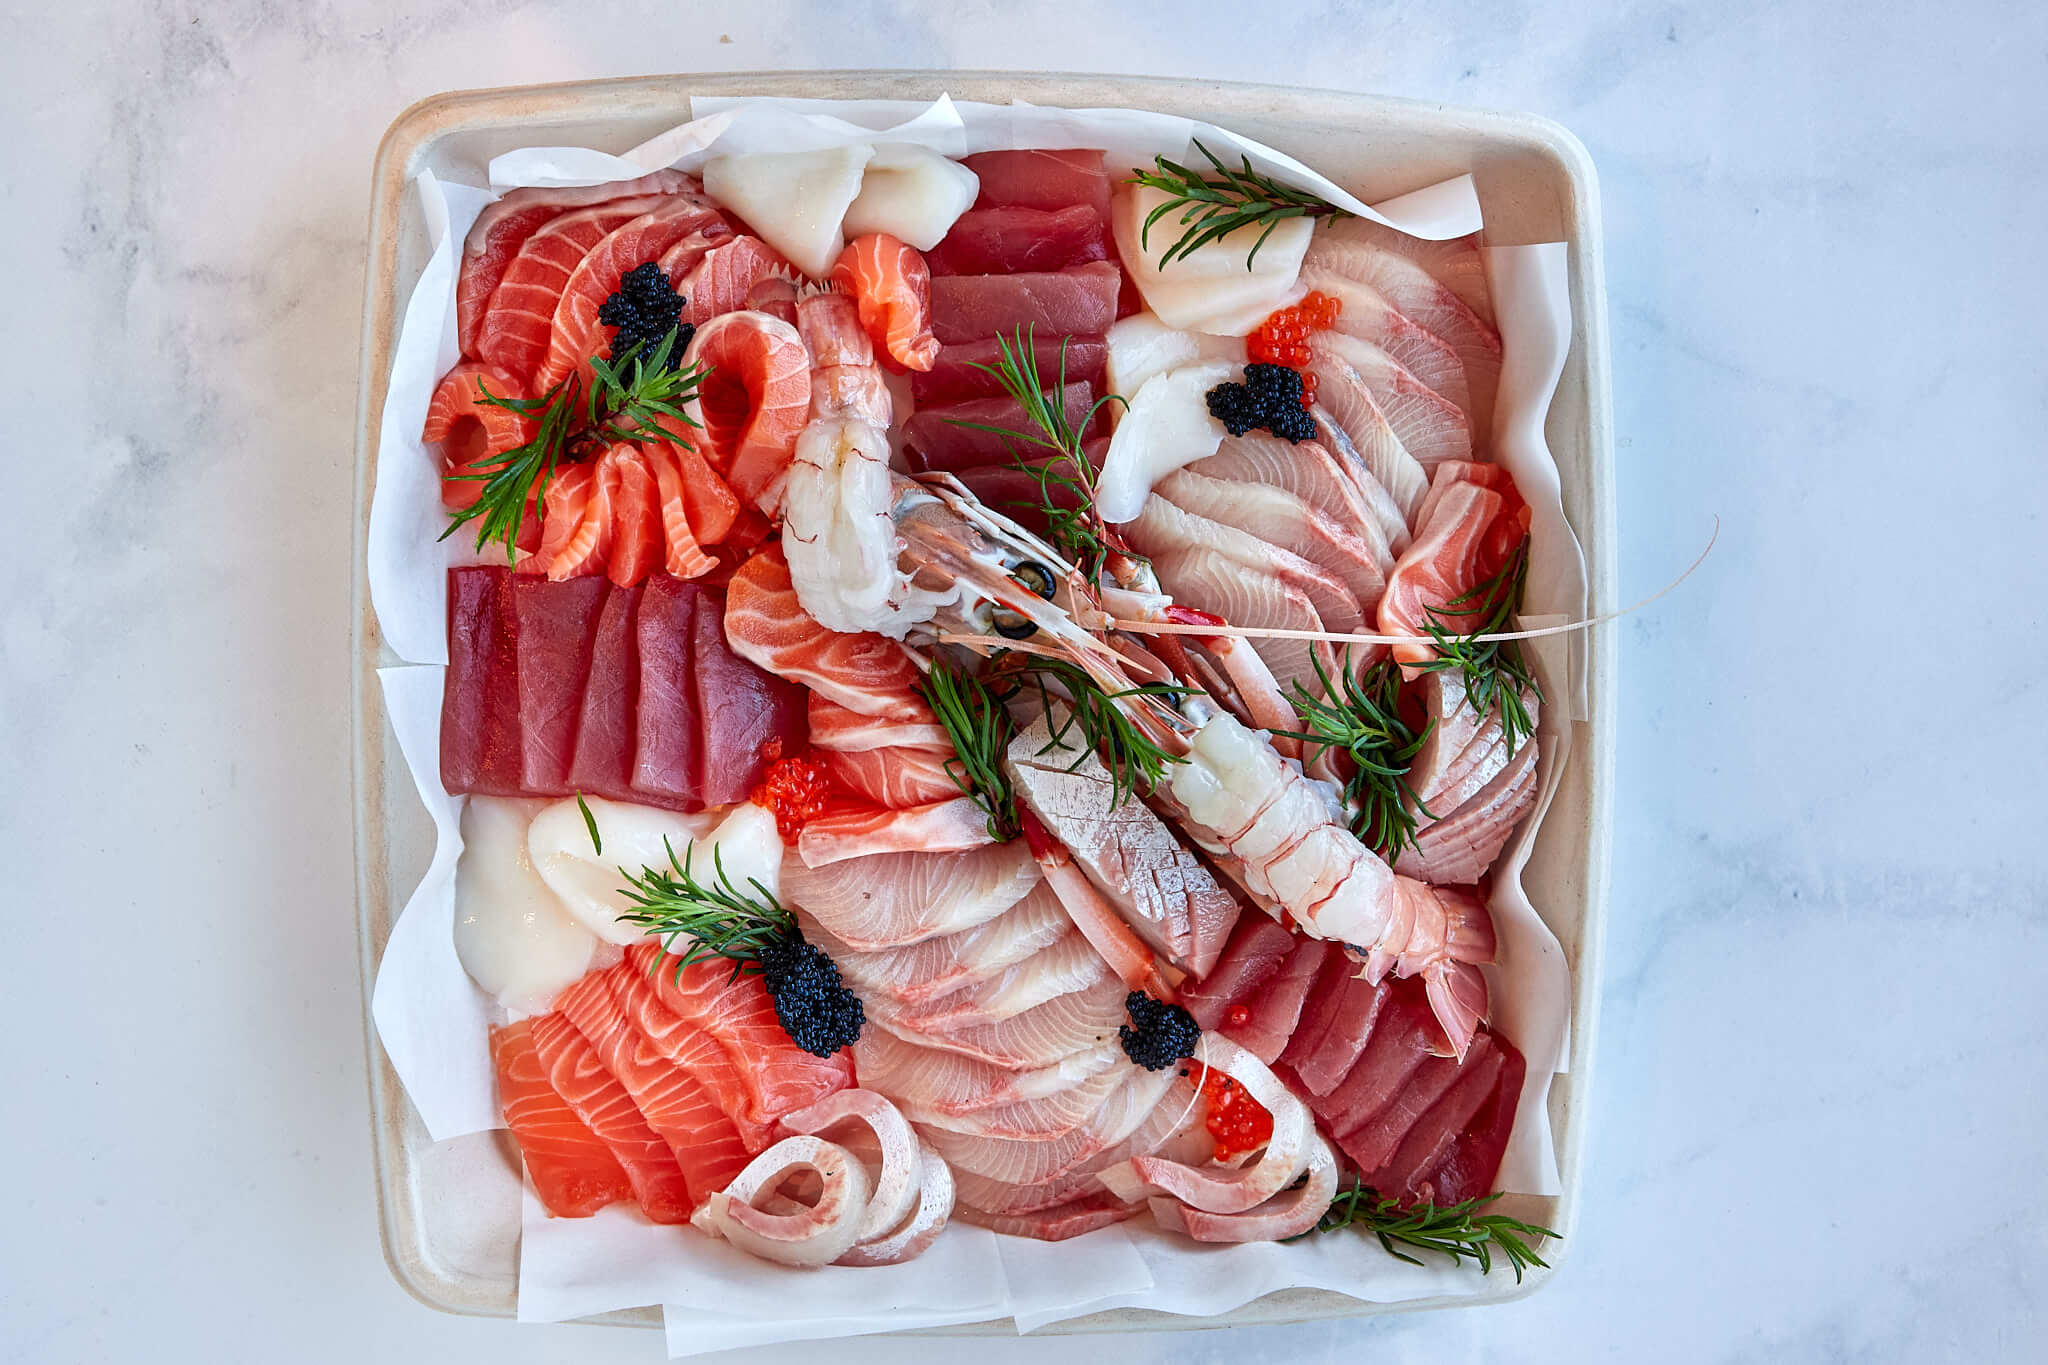 SASHIMI PLATTERS - Steve Costi's Seafood With sadhimi salmon, scallops, king fish and sashimi tuna